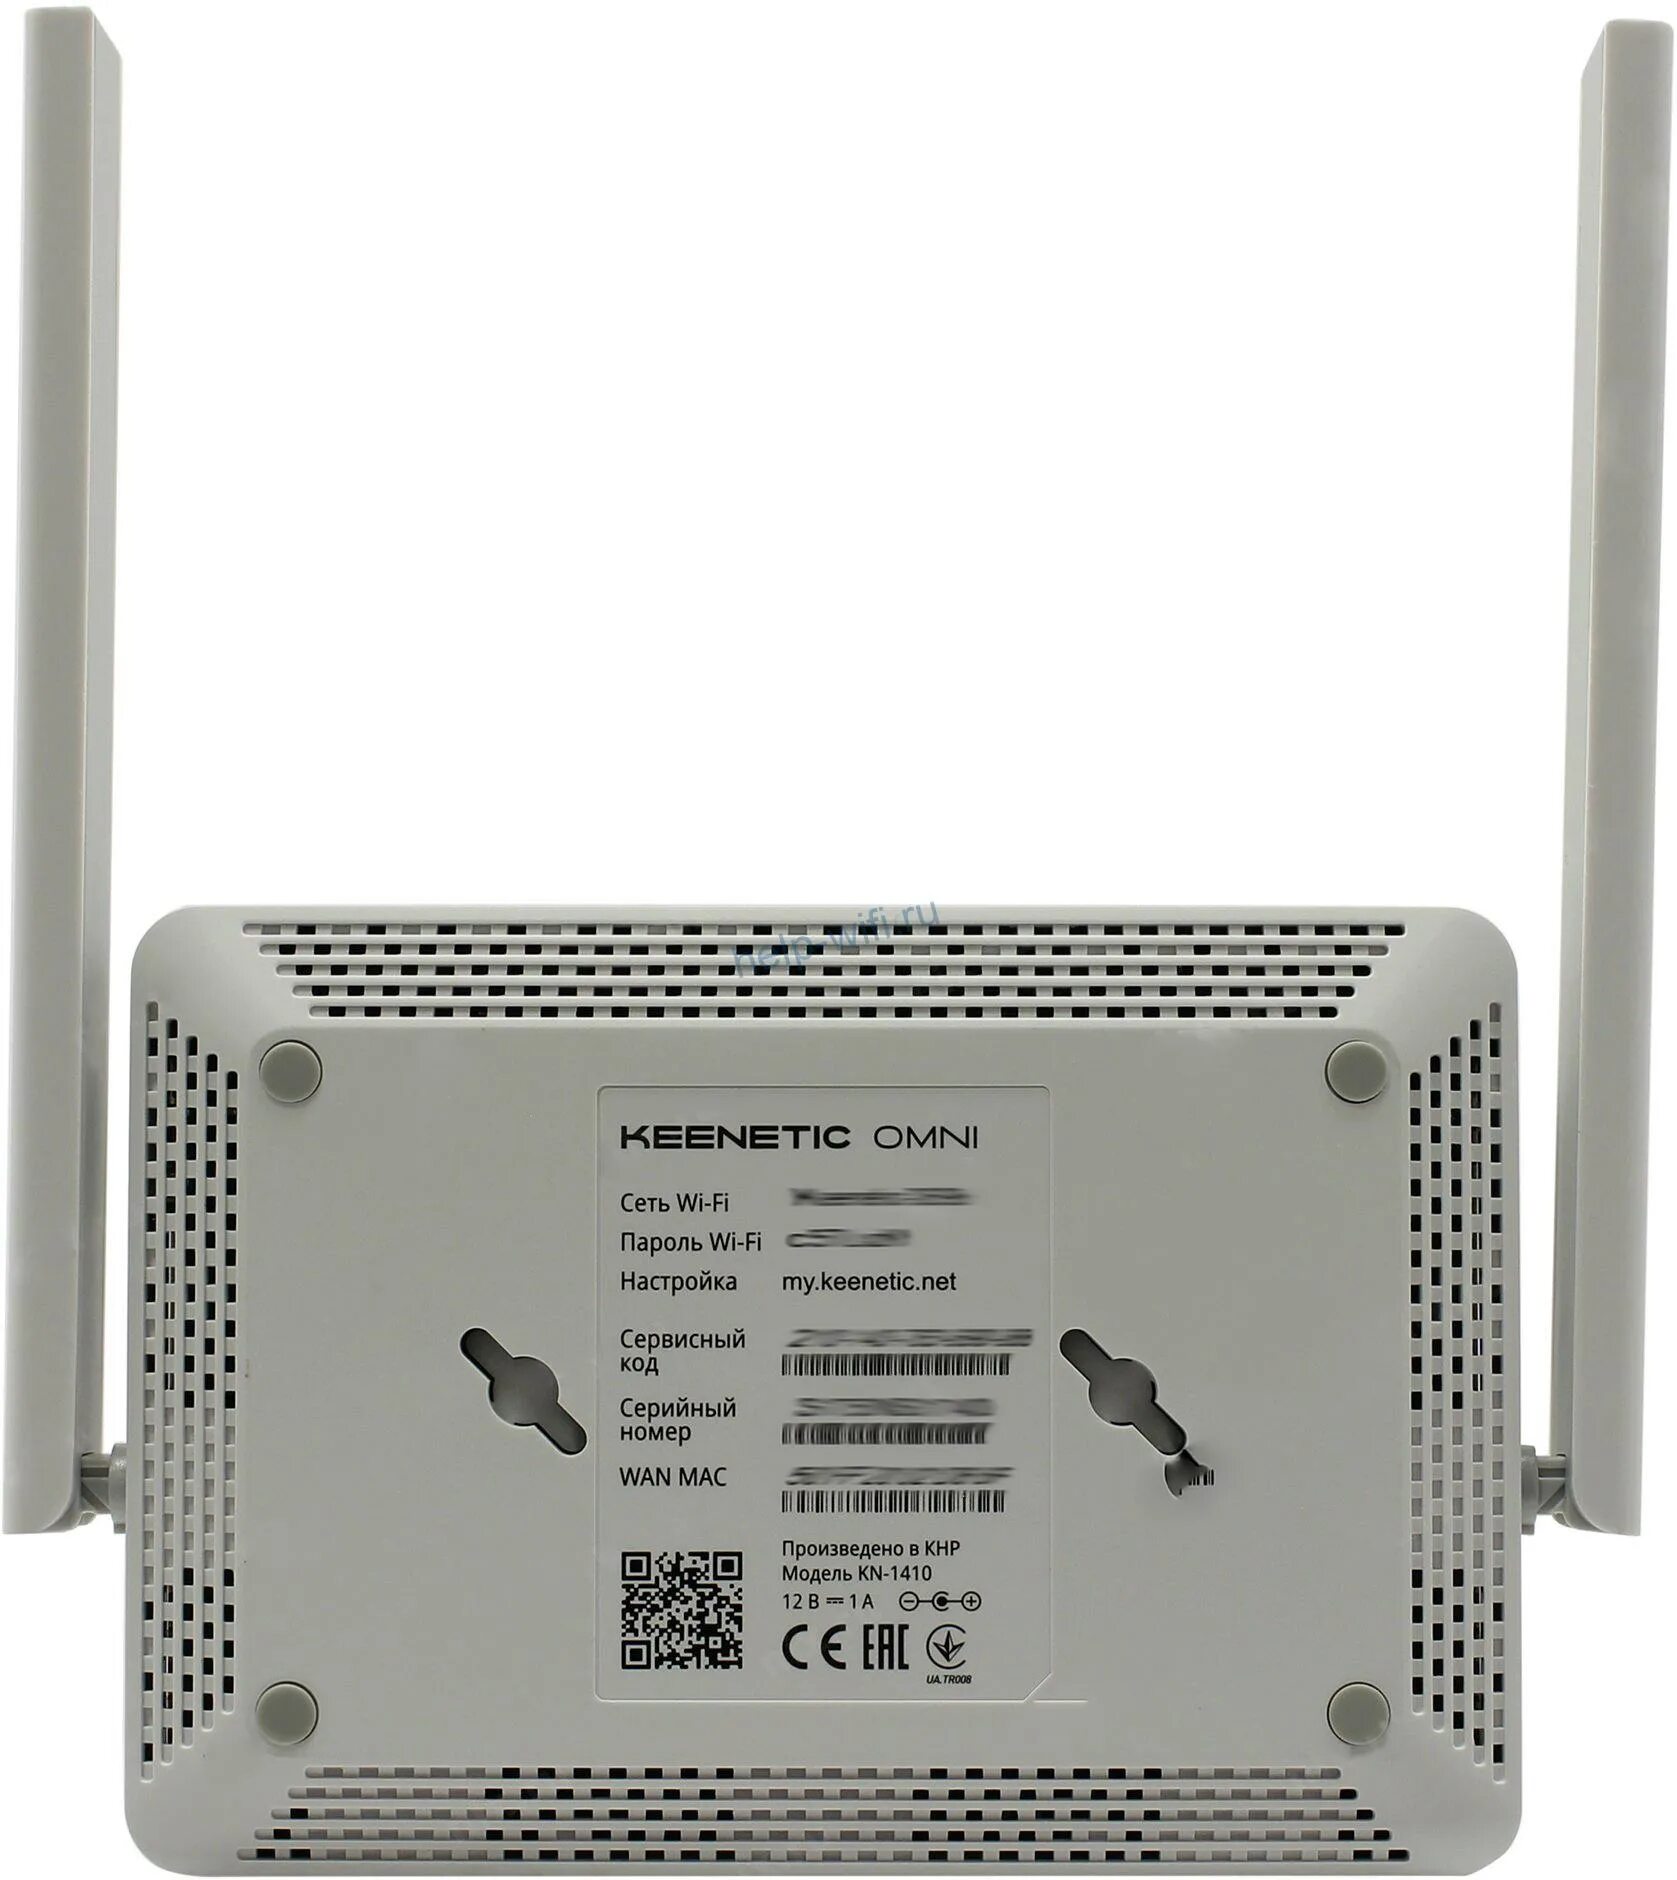 WIFI роутер Keenetic Omni n300. Keenetic Omni (KN-1410). Wi-Fi роутер Keenetic 4g n300 10/100base-TX/4g ready белый. Keenetic KN-1410.